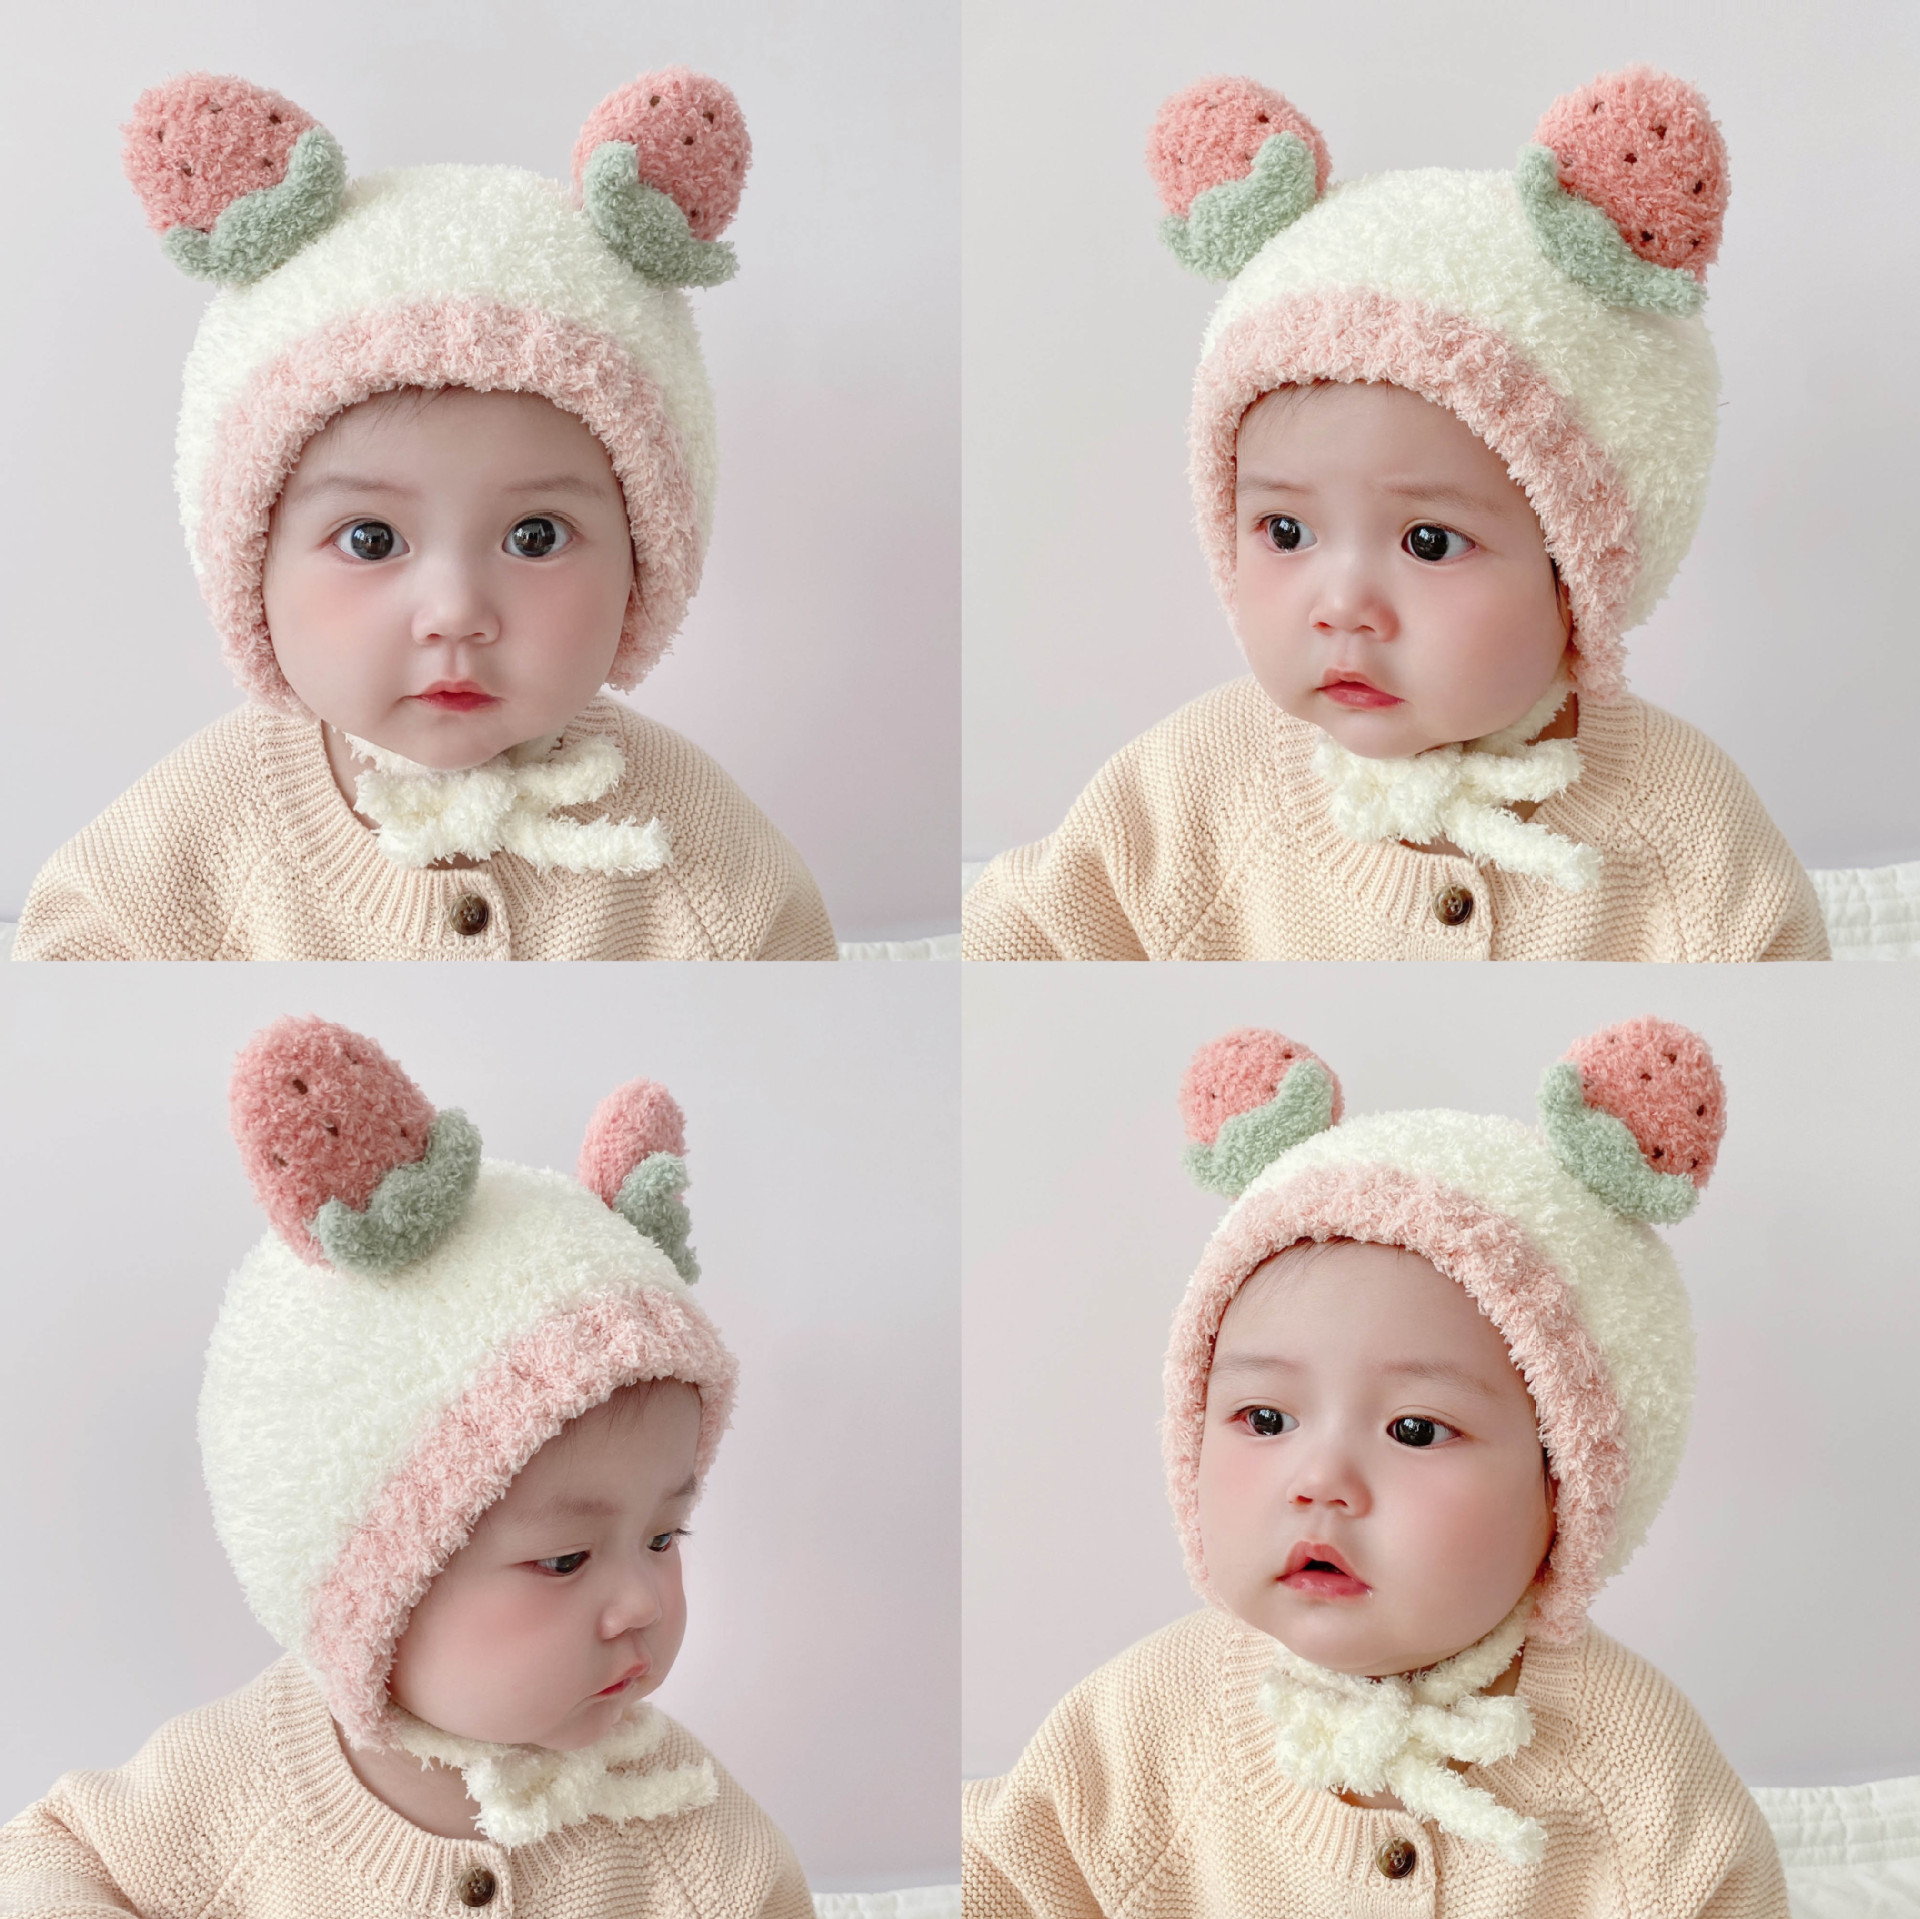 婴儿帽子冬季加厚毛绒护耳帽可爱羊角婴幼儿宝宝针织保暖儿童帽潮